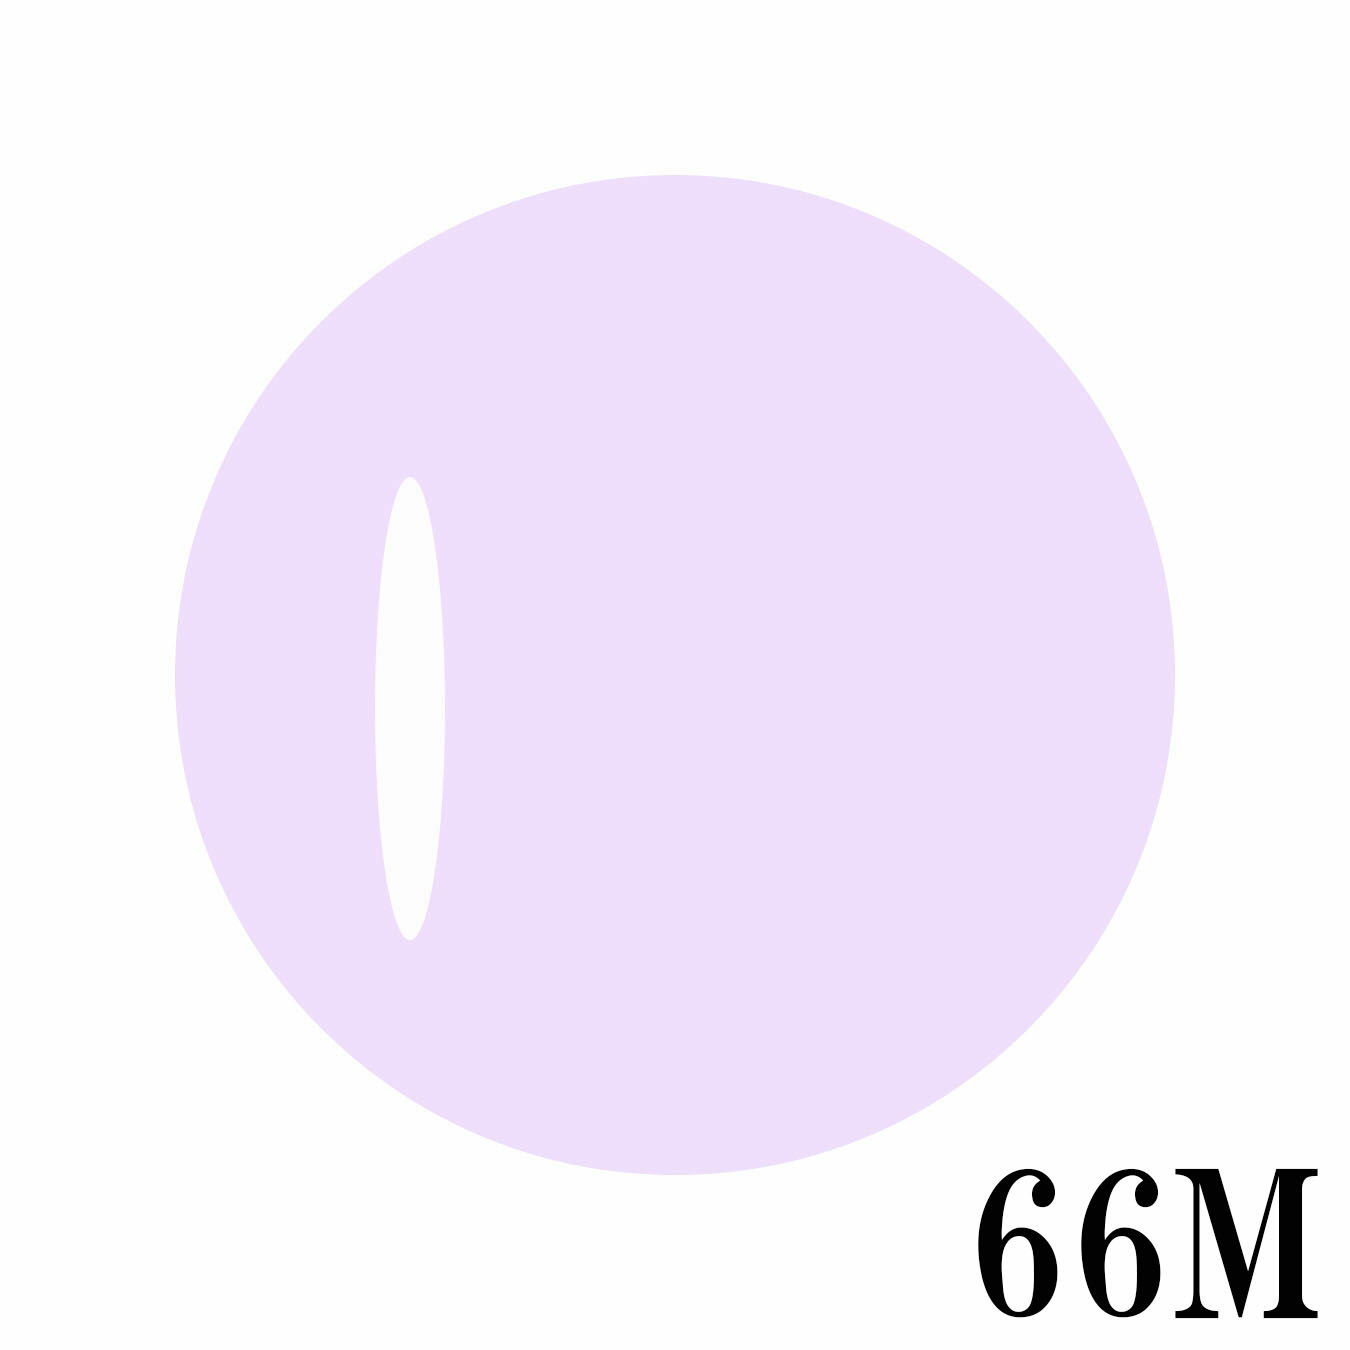 LinoGel リノジェル カラージェル 5g LED/UVライト対応 66M ラベンダー lavender プロフェショナル ジェルネイル カラー ネイル ジェルネイルカラー ネイルアート 灰みた青みをおびた紫色